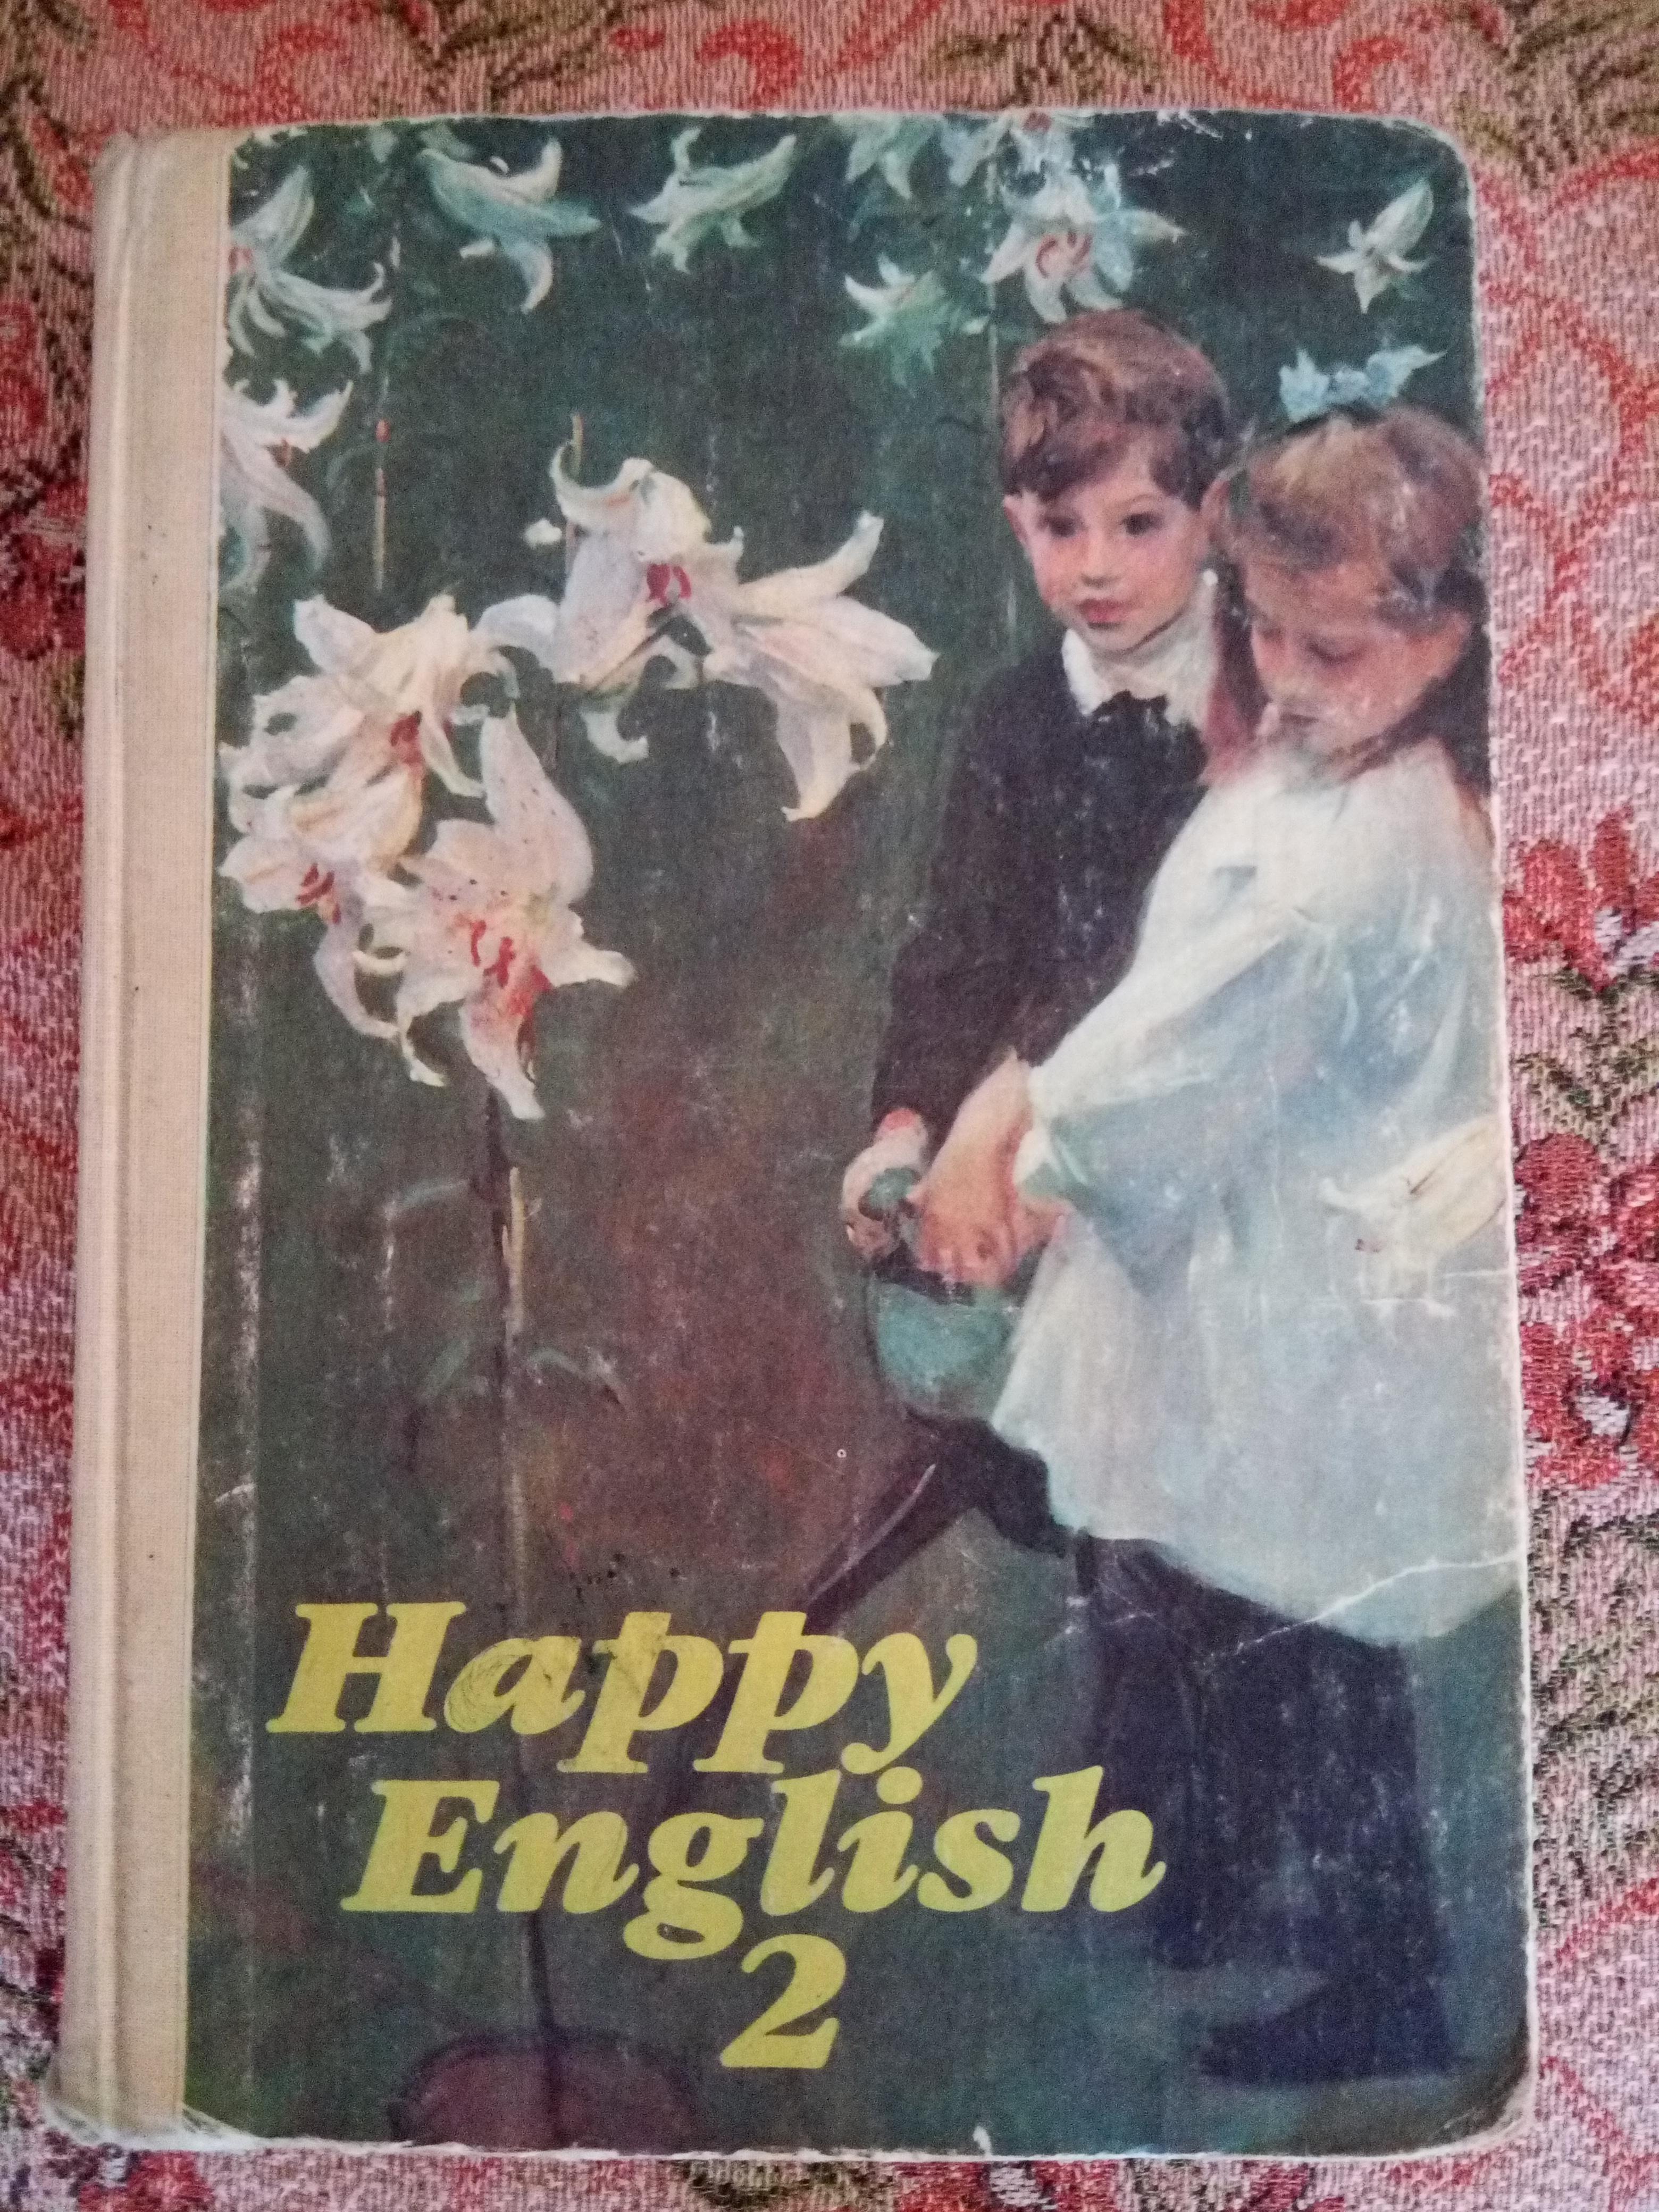 Happy English-2 / Счастливый английский. Книга 2. 7-9 класс Т. Б. Клементьева, Д. Шэннон